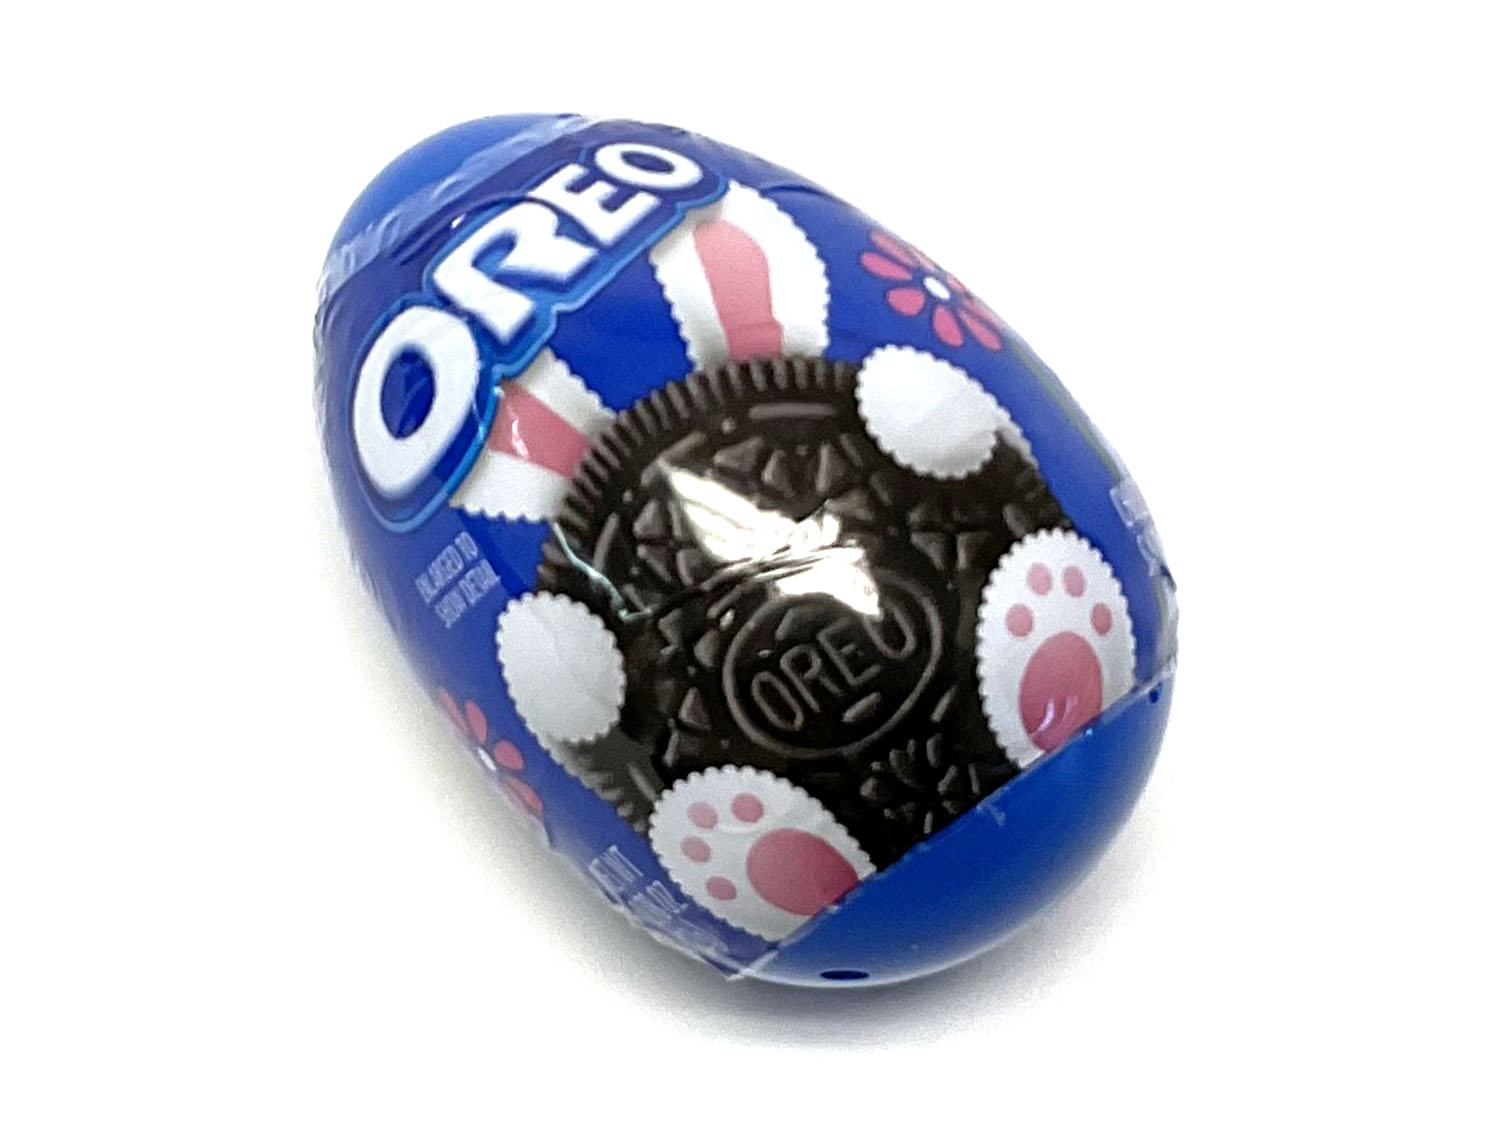 Oreo Easter Egg - 0.78 oz